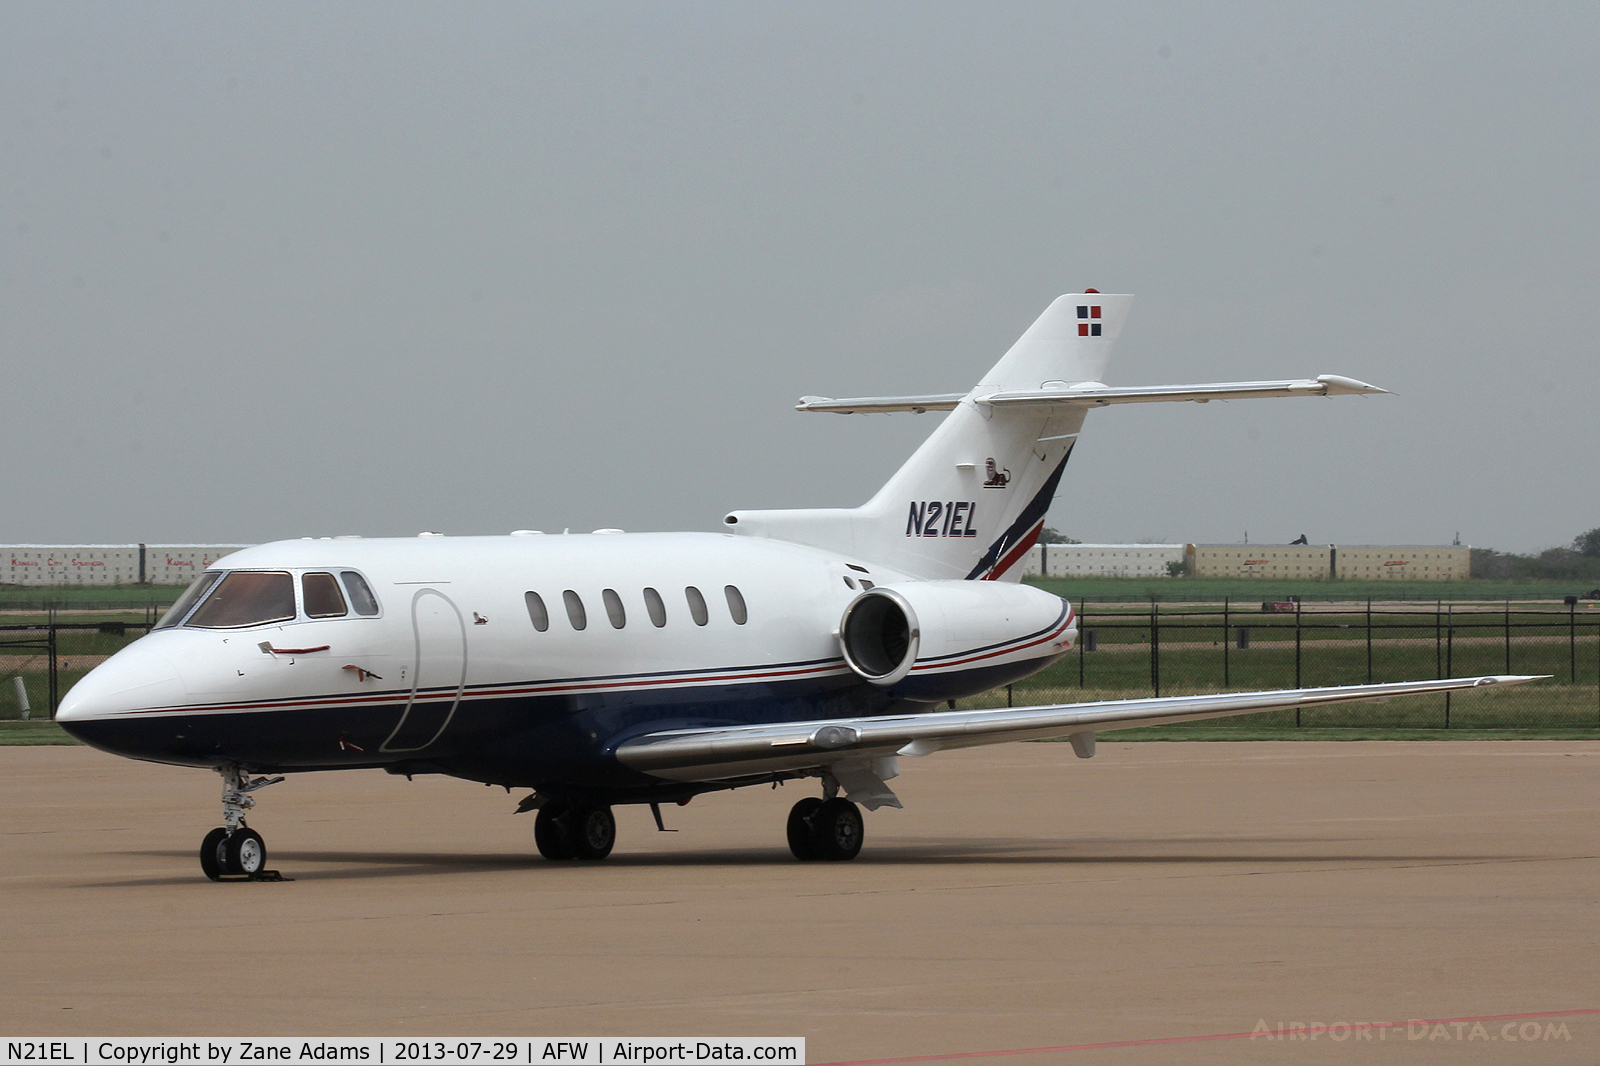 N21EL, 1999 Raytheon Hawker 800XP C/N 258396, At Alliance Airport - Ft. Worth, TX